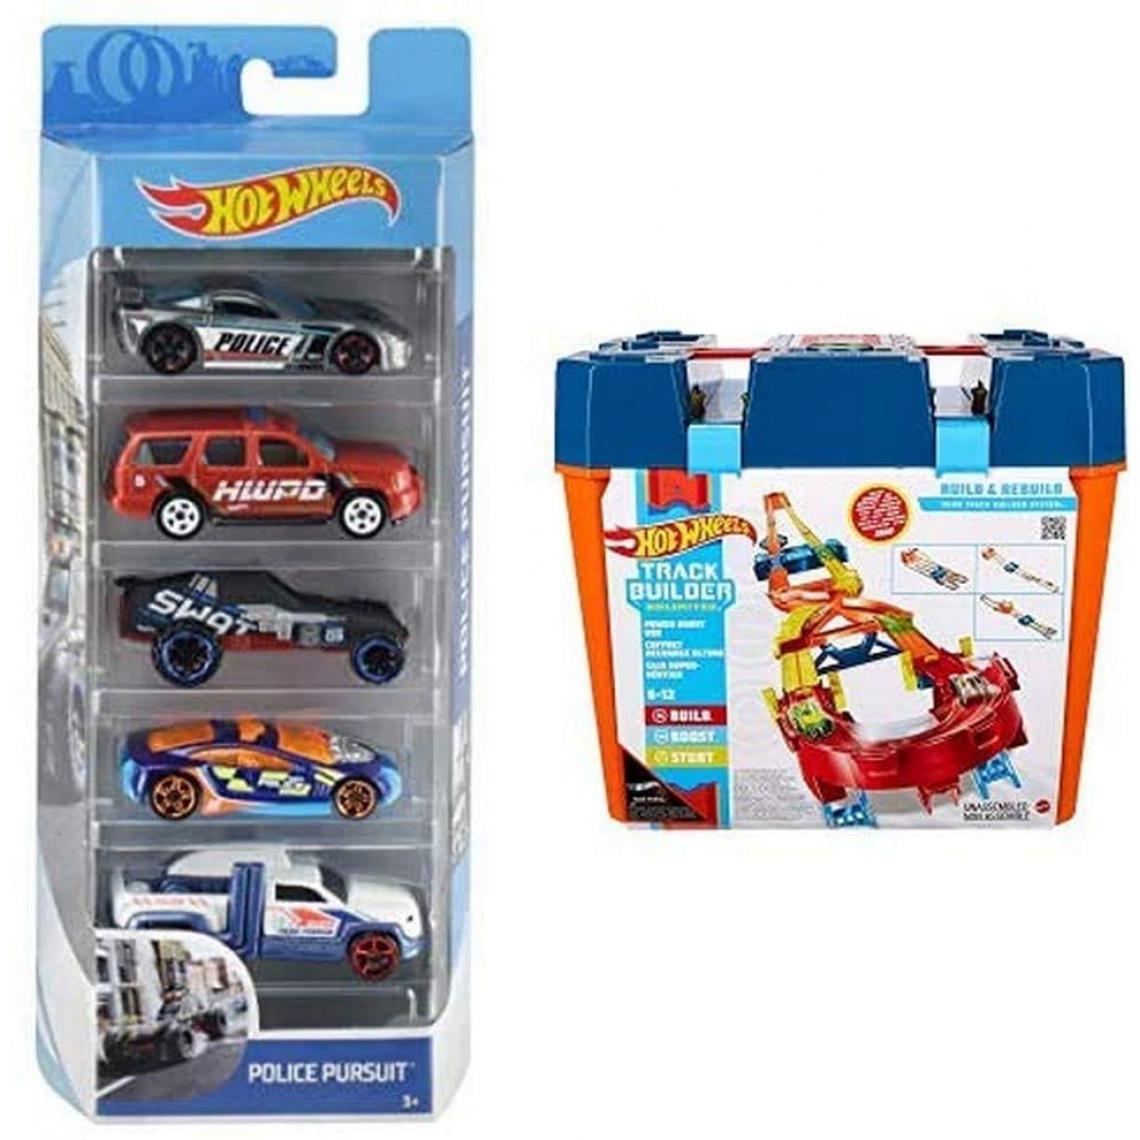 Hot Wheels - Coffret 5 véhicules, Jouet pour Enfant de Petites Voitures Miniatures + Track Builder Unlimited - Voiture de collection miniature